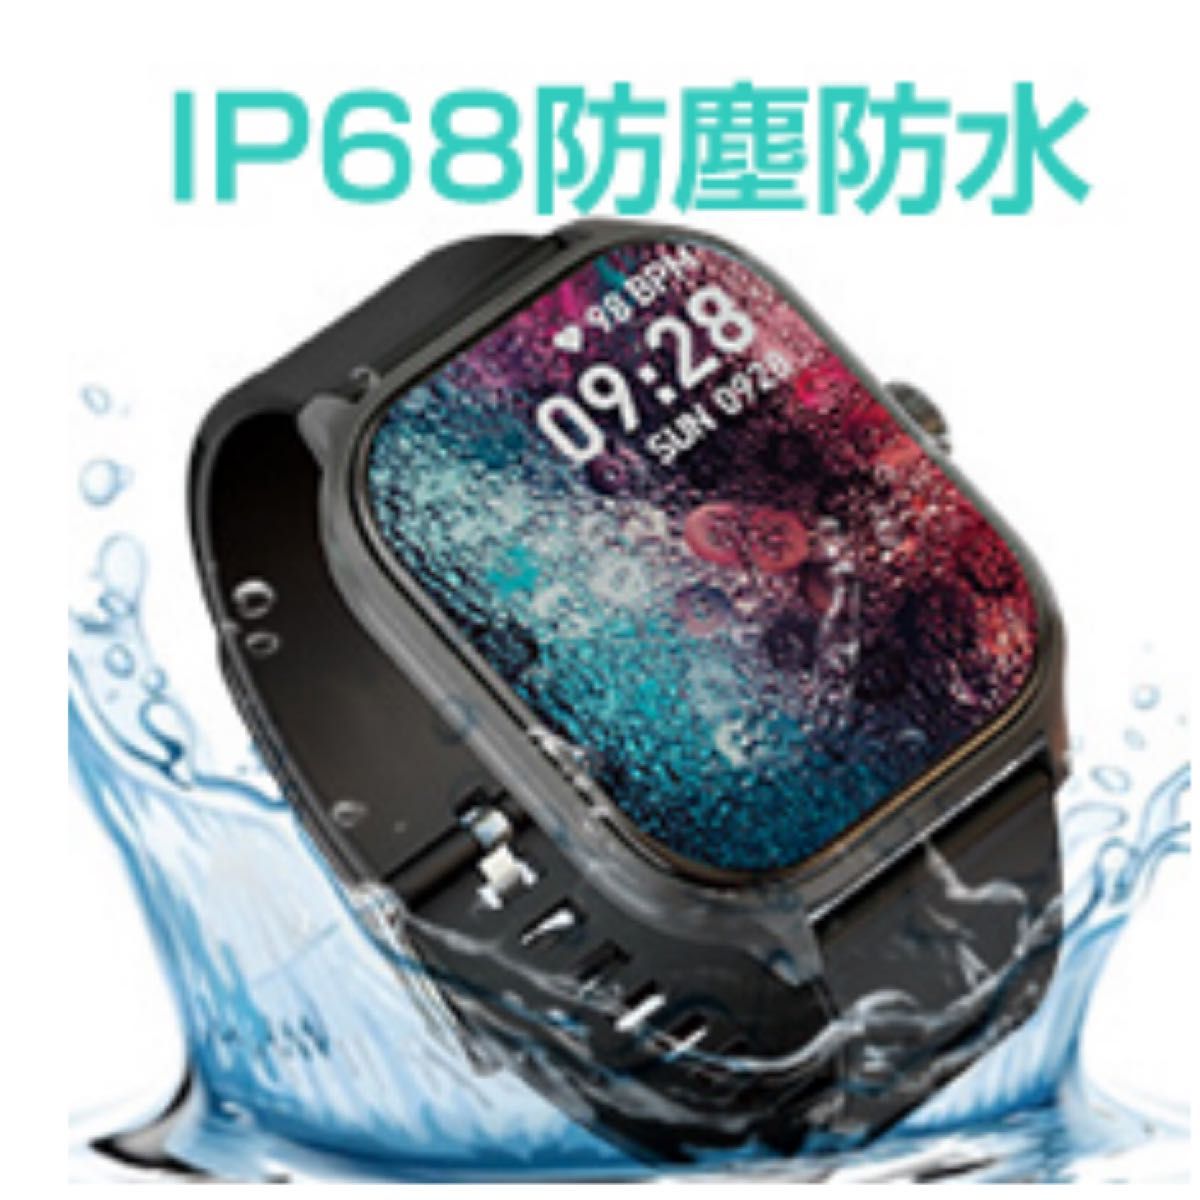 スマートウォッチ Bluetooth 通話機能 音楽再生 腕時計 活動量計 歩数計 IP68防水 大画面 フルタッチスクリーン